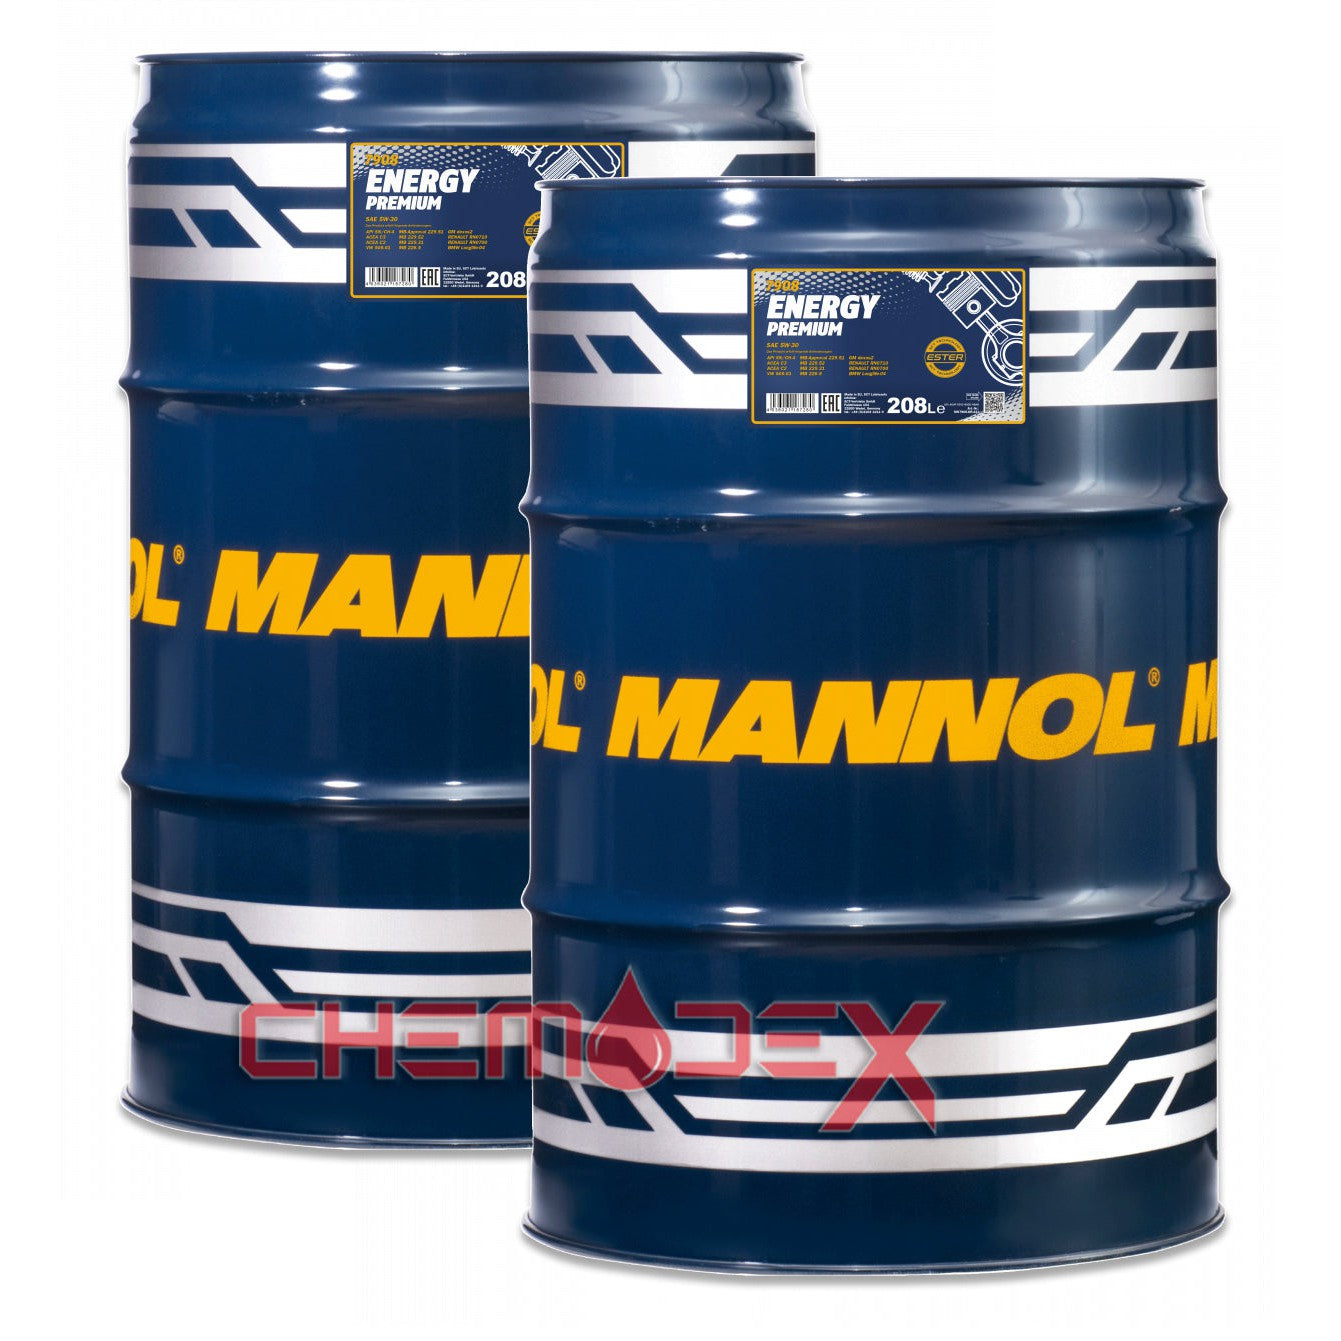 2 x MANNOL Energy Premium C2/C3 SAE 5W30 208L Fully Synthetic Premium Engine Oil